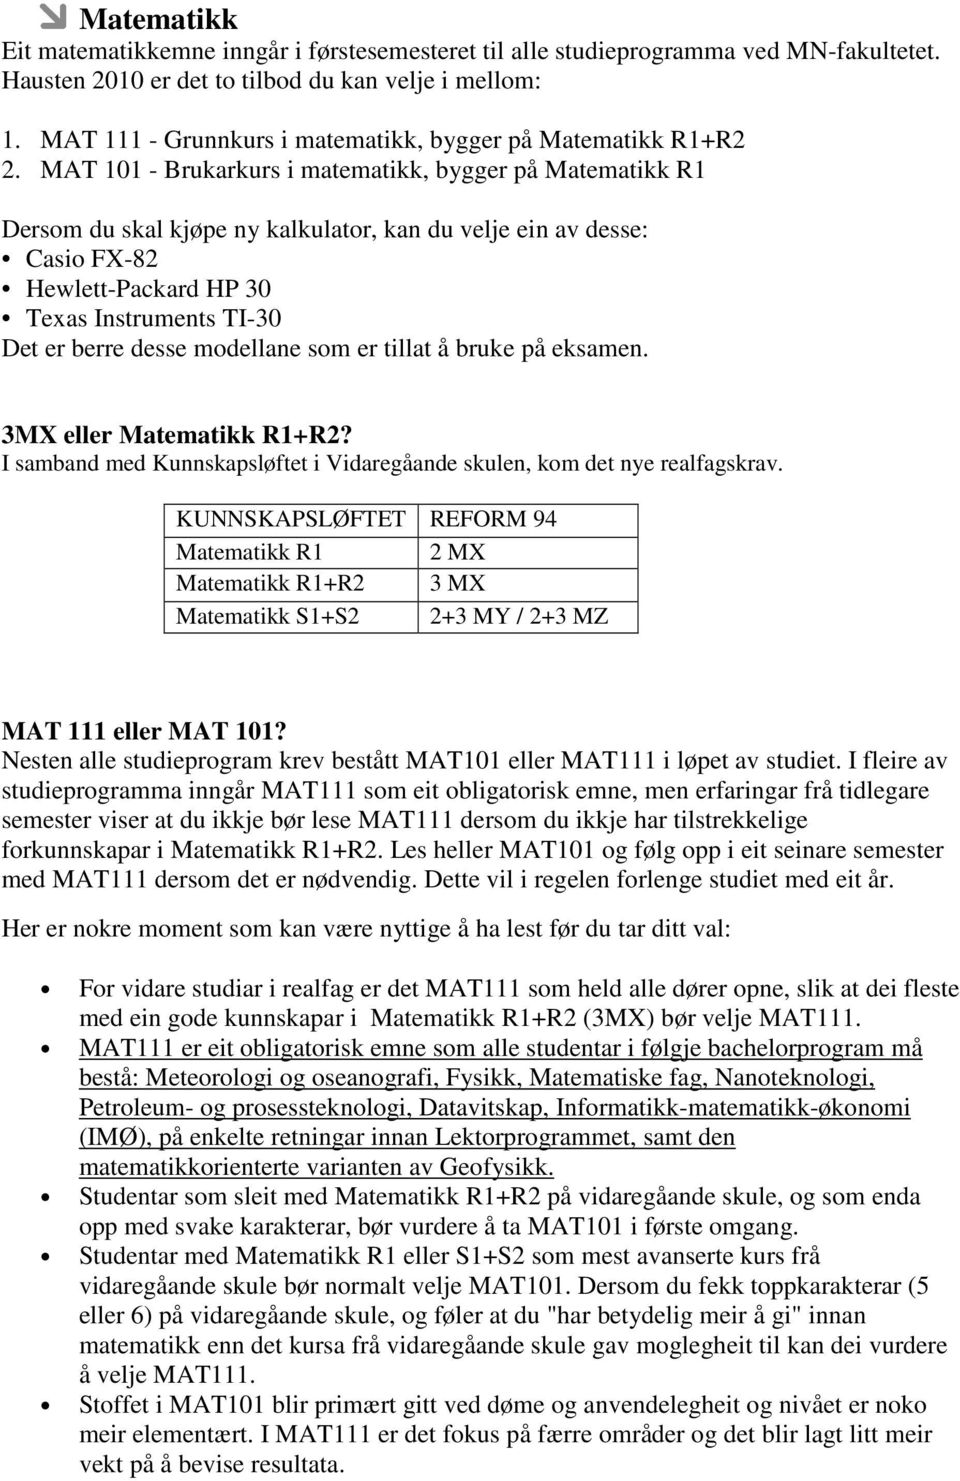 MAT 101 - Brukarkurs i matematikk, bygger på Matematikk R1 Dersom du skal kjøpe ny kalkulator, kan du velje ein av desse: Casio FX-82 Hewlett-Packard HP 30 Texas Instruments TI-30 Det er berre desse